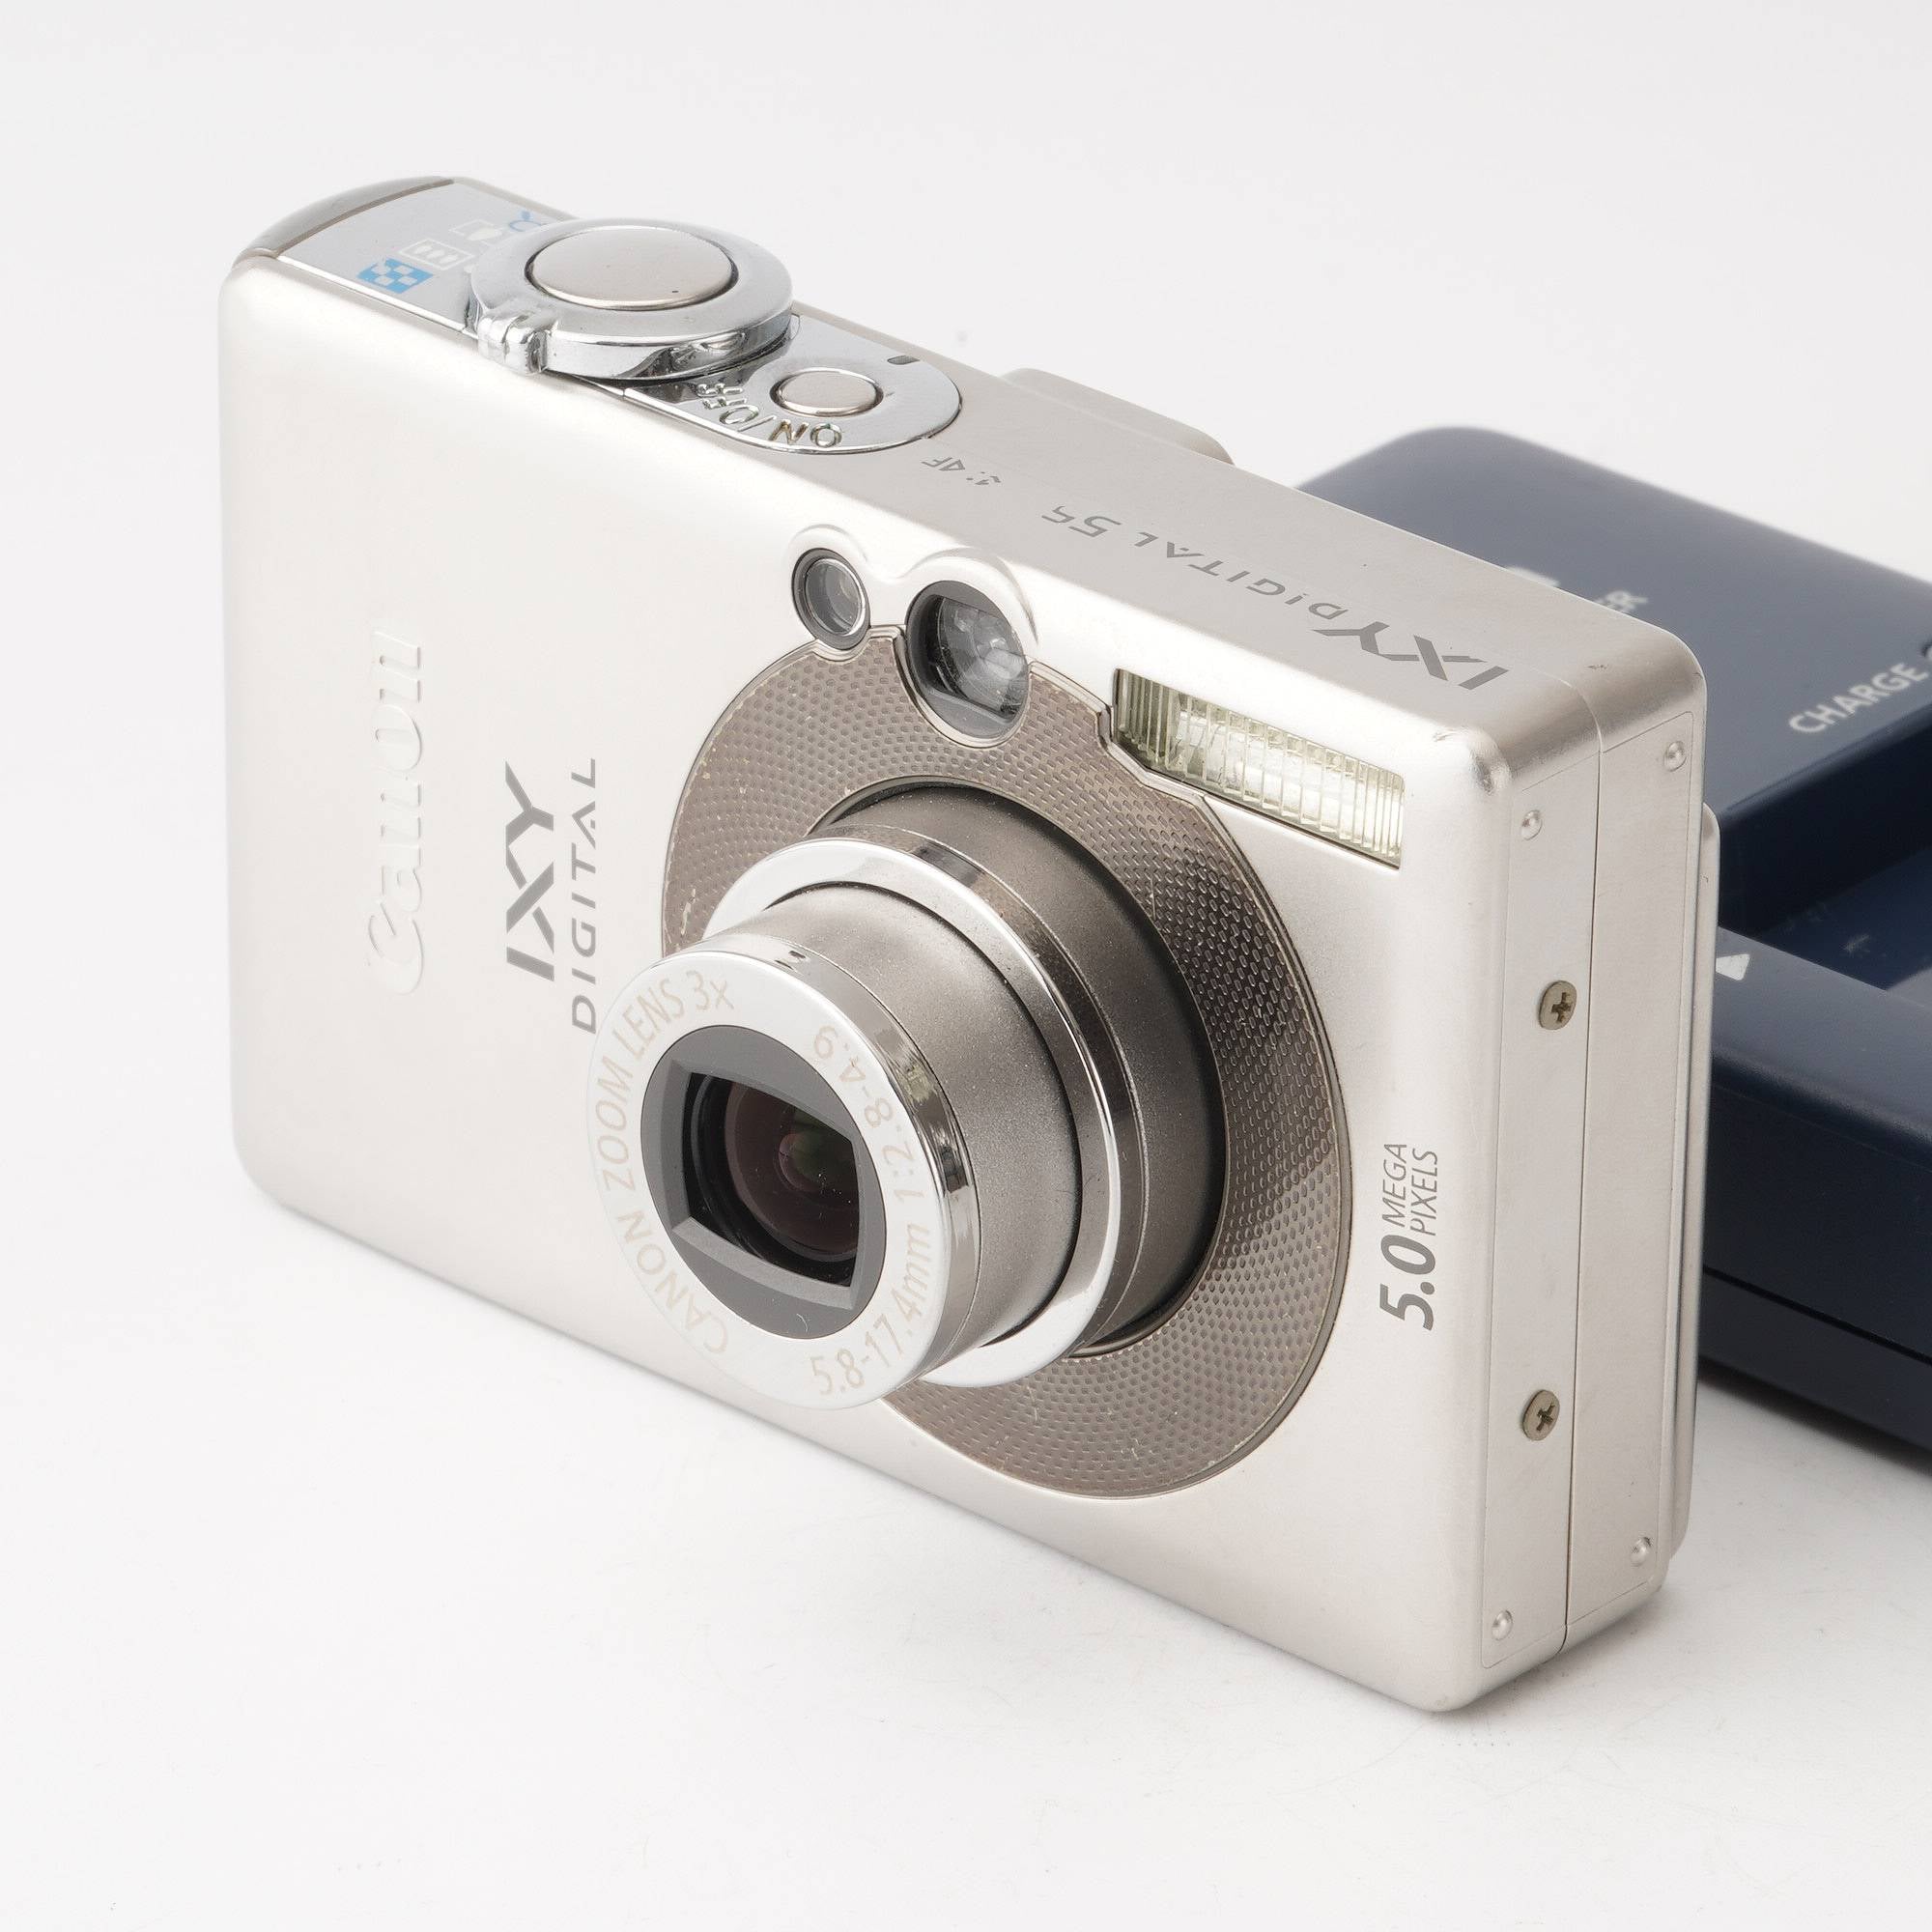 Canon IXY DIGITAL 55 デジカメ オールドコンデジ-